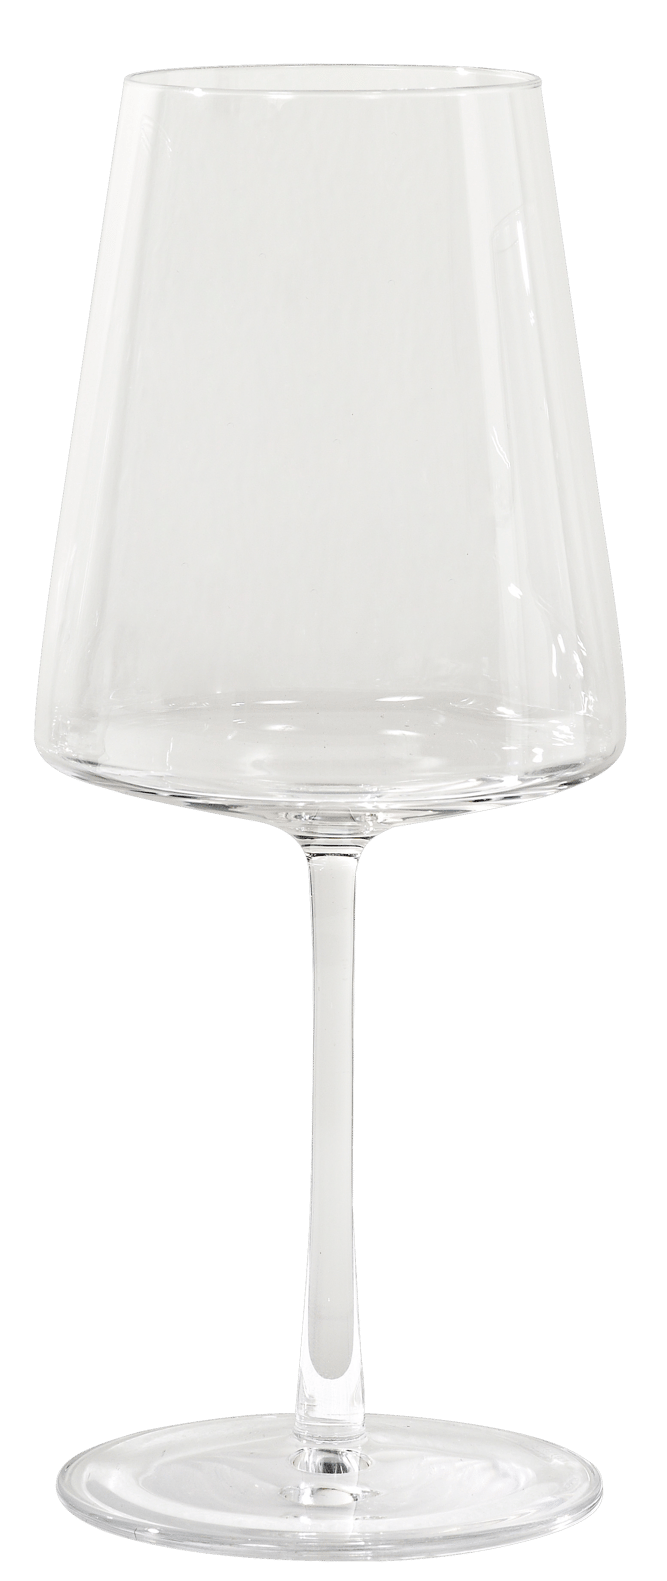 POWER Copo de vinho transparente H 21 cm - Ø 8,5 cm